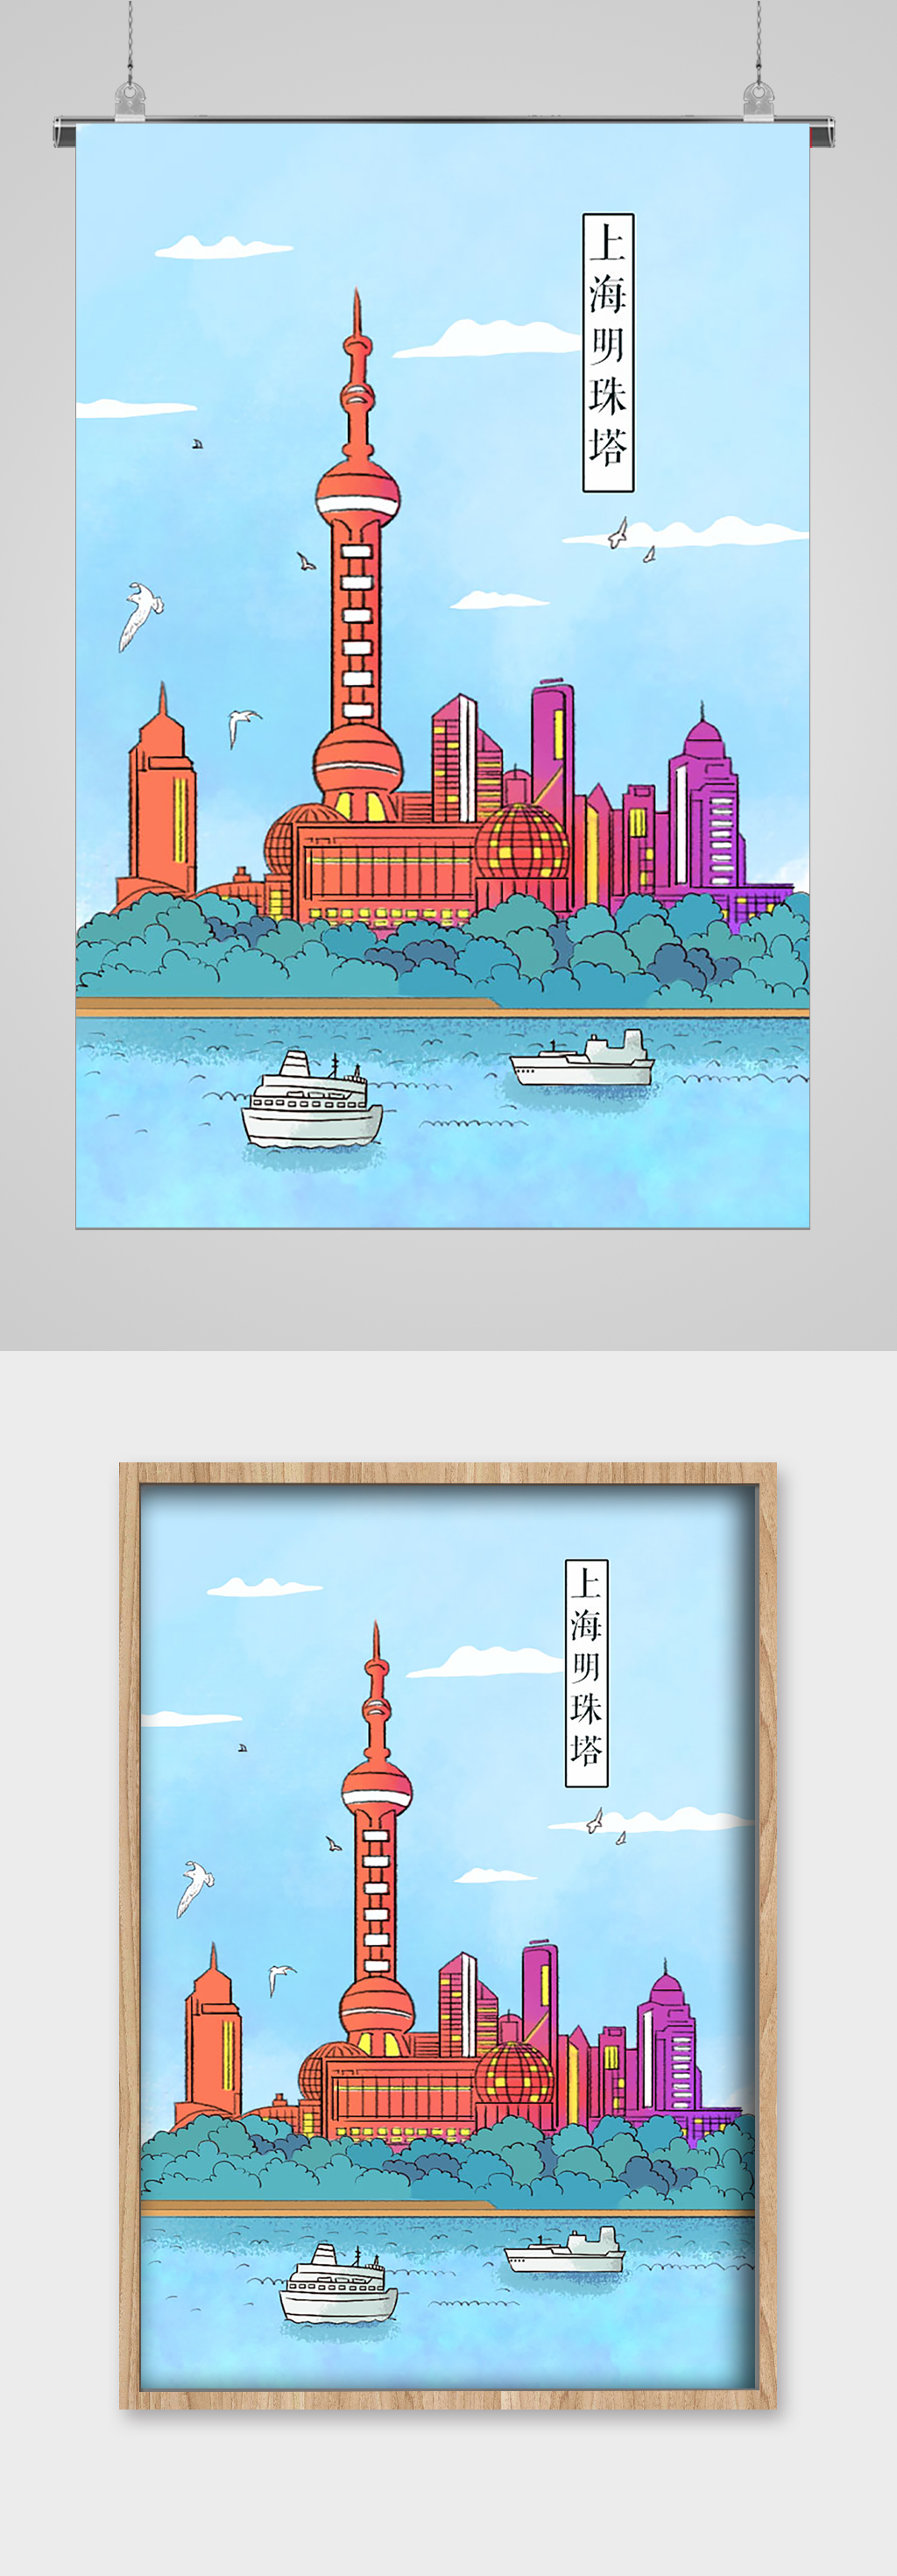 上海明珠塔地方特色建筑插画